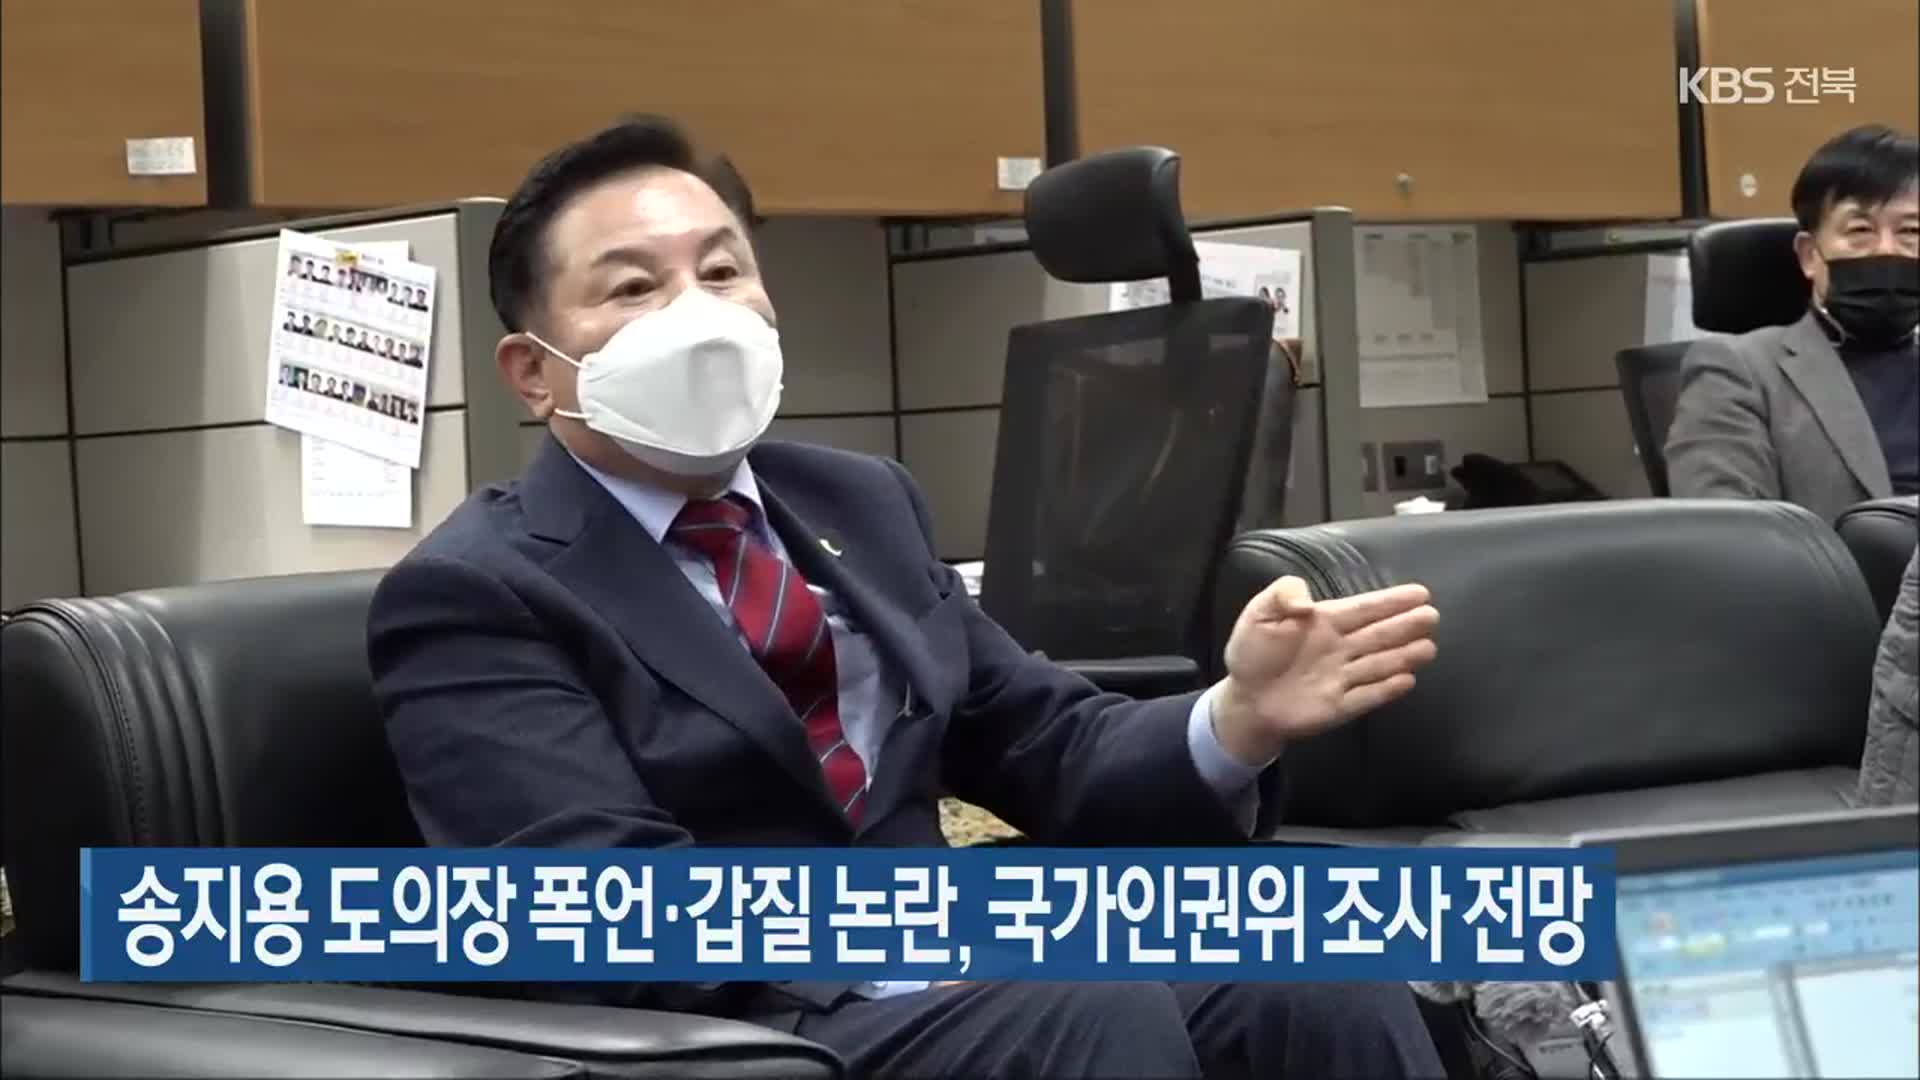 송지용 전북도의장 폭언·갑질 논란, 국가인권위 조사 전망